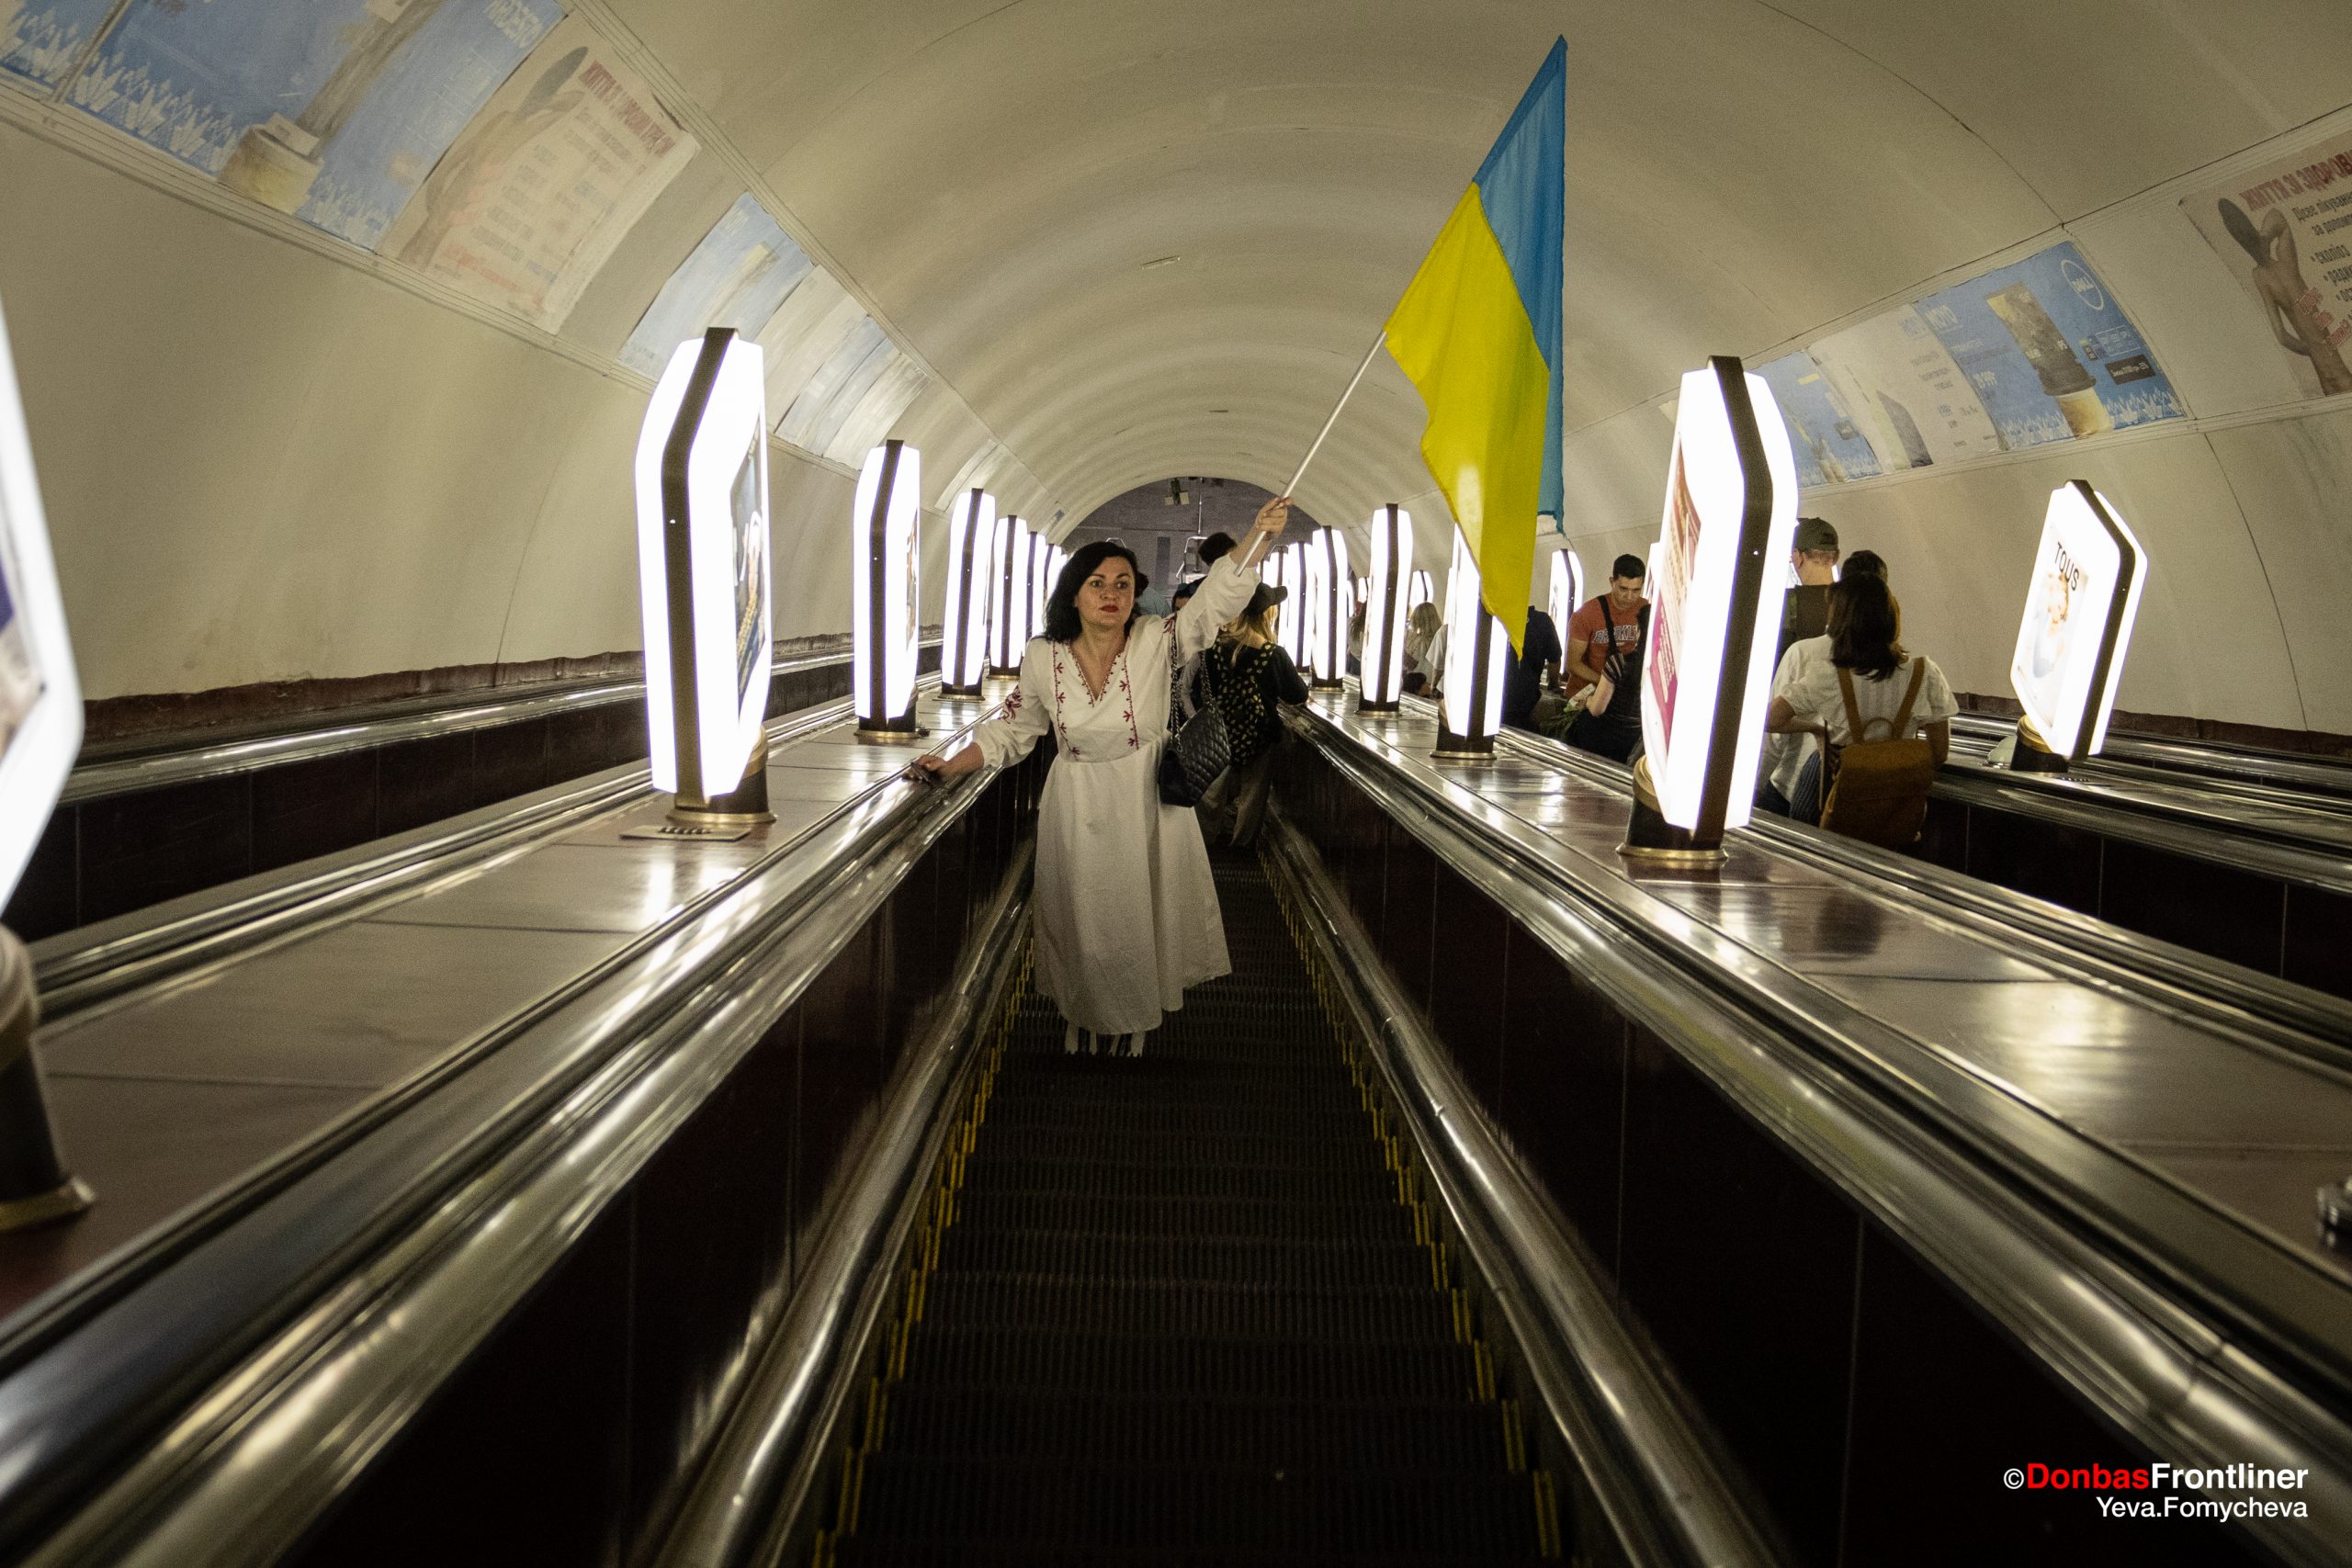 Donbas Frontliner / Вдень у Києві було оголошено повітряну тривогу. Частина людей спустилася в метрополітен.